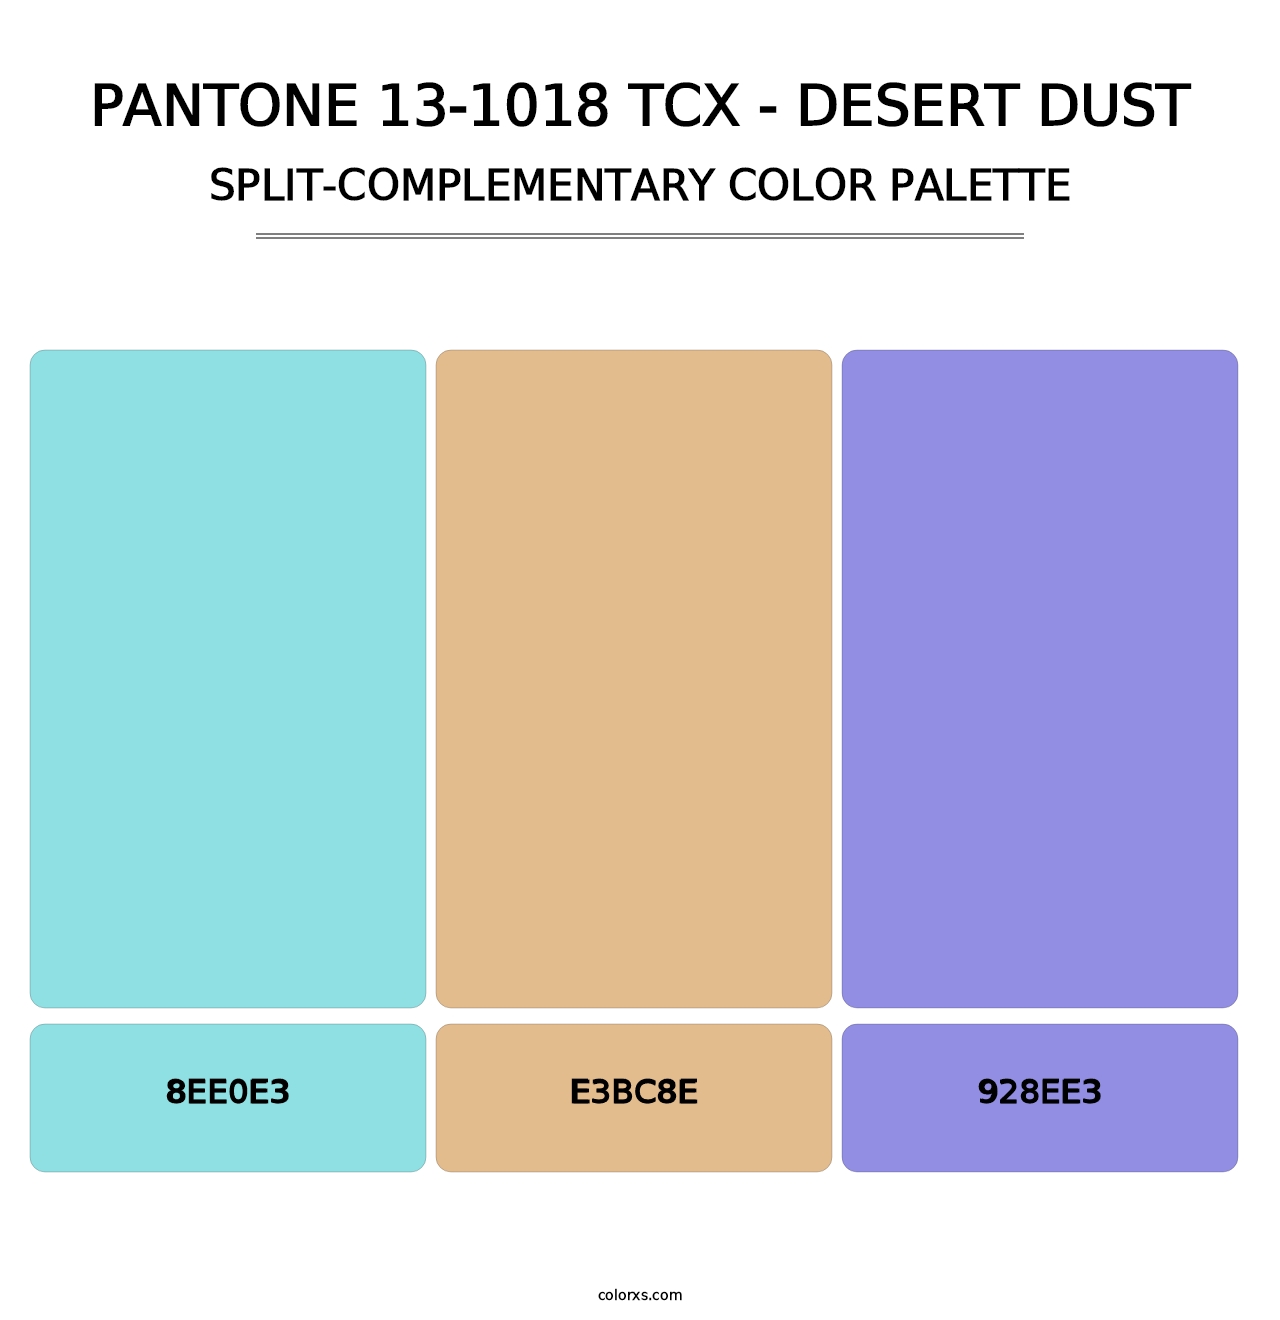 PANTONE 13-1018 TCX - Desert Dust - Split-Complementary Color Palette